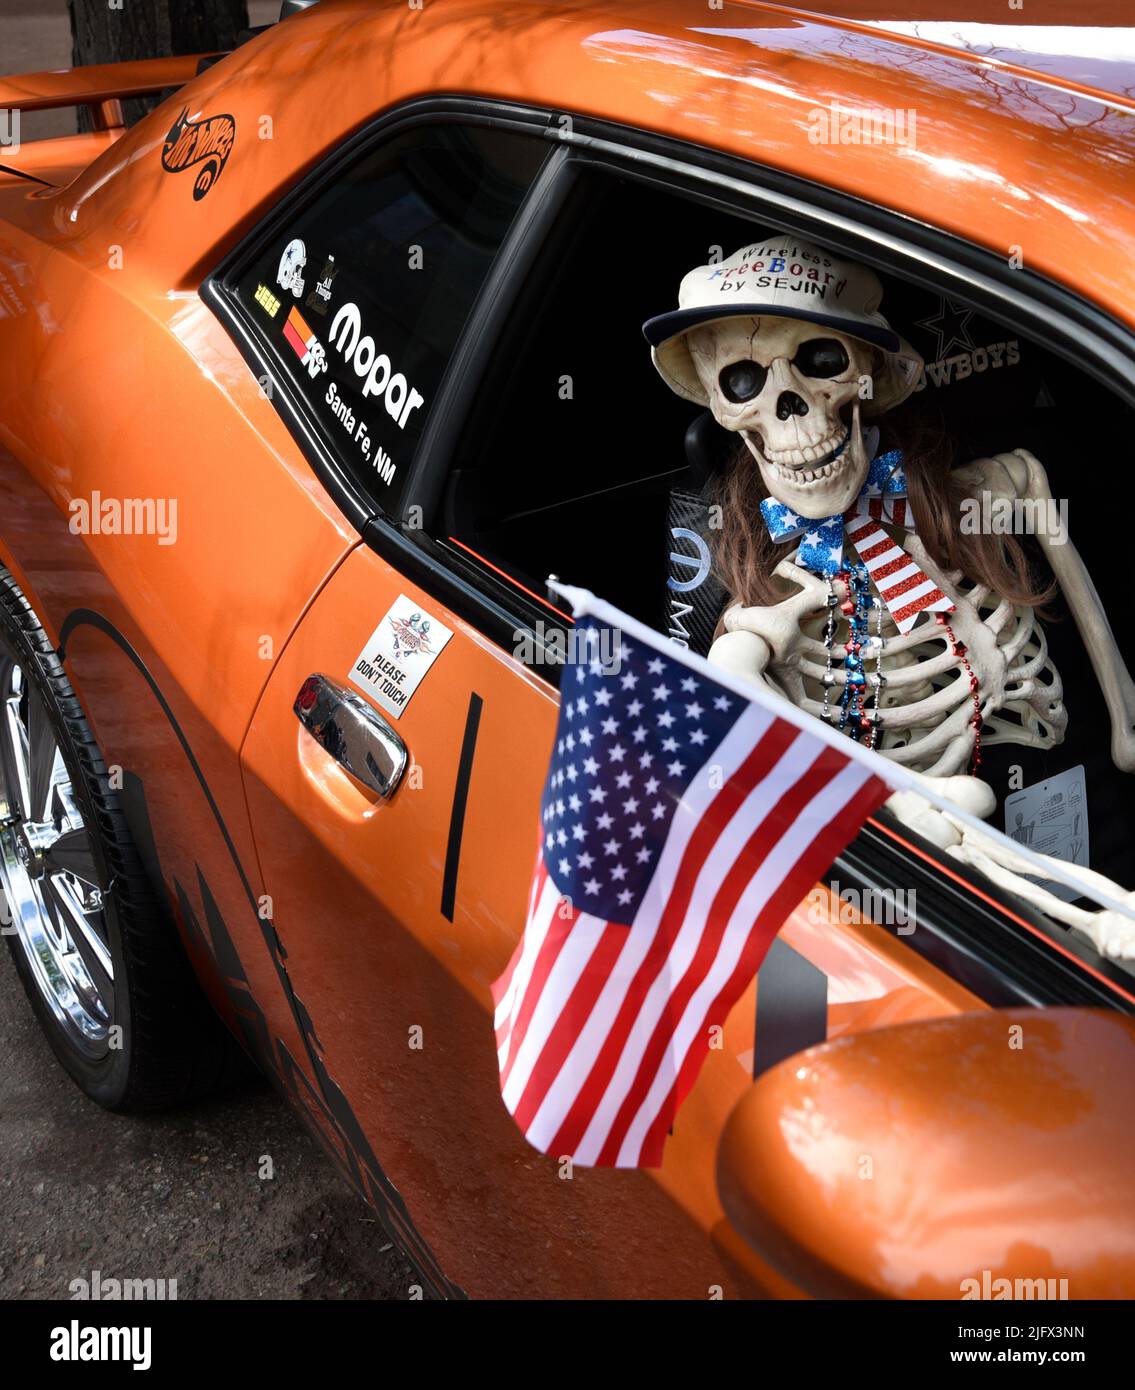 Ein neuheitliches Kunststoff-Skelett hält eine amerikanische Flagge in einem Dodge Challenger aus dem Jahr 2011, der auf einer Automobilausstellung am 4. Juli in Santa Fe, New Mexico, ausgestellt wird. Stockfoto